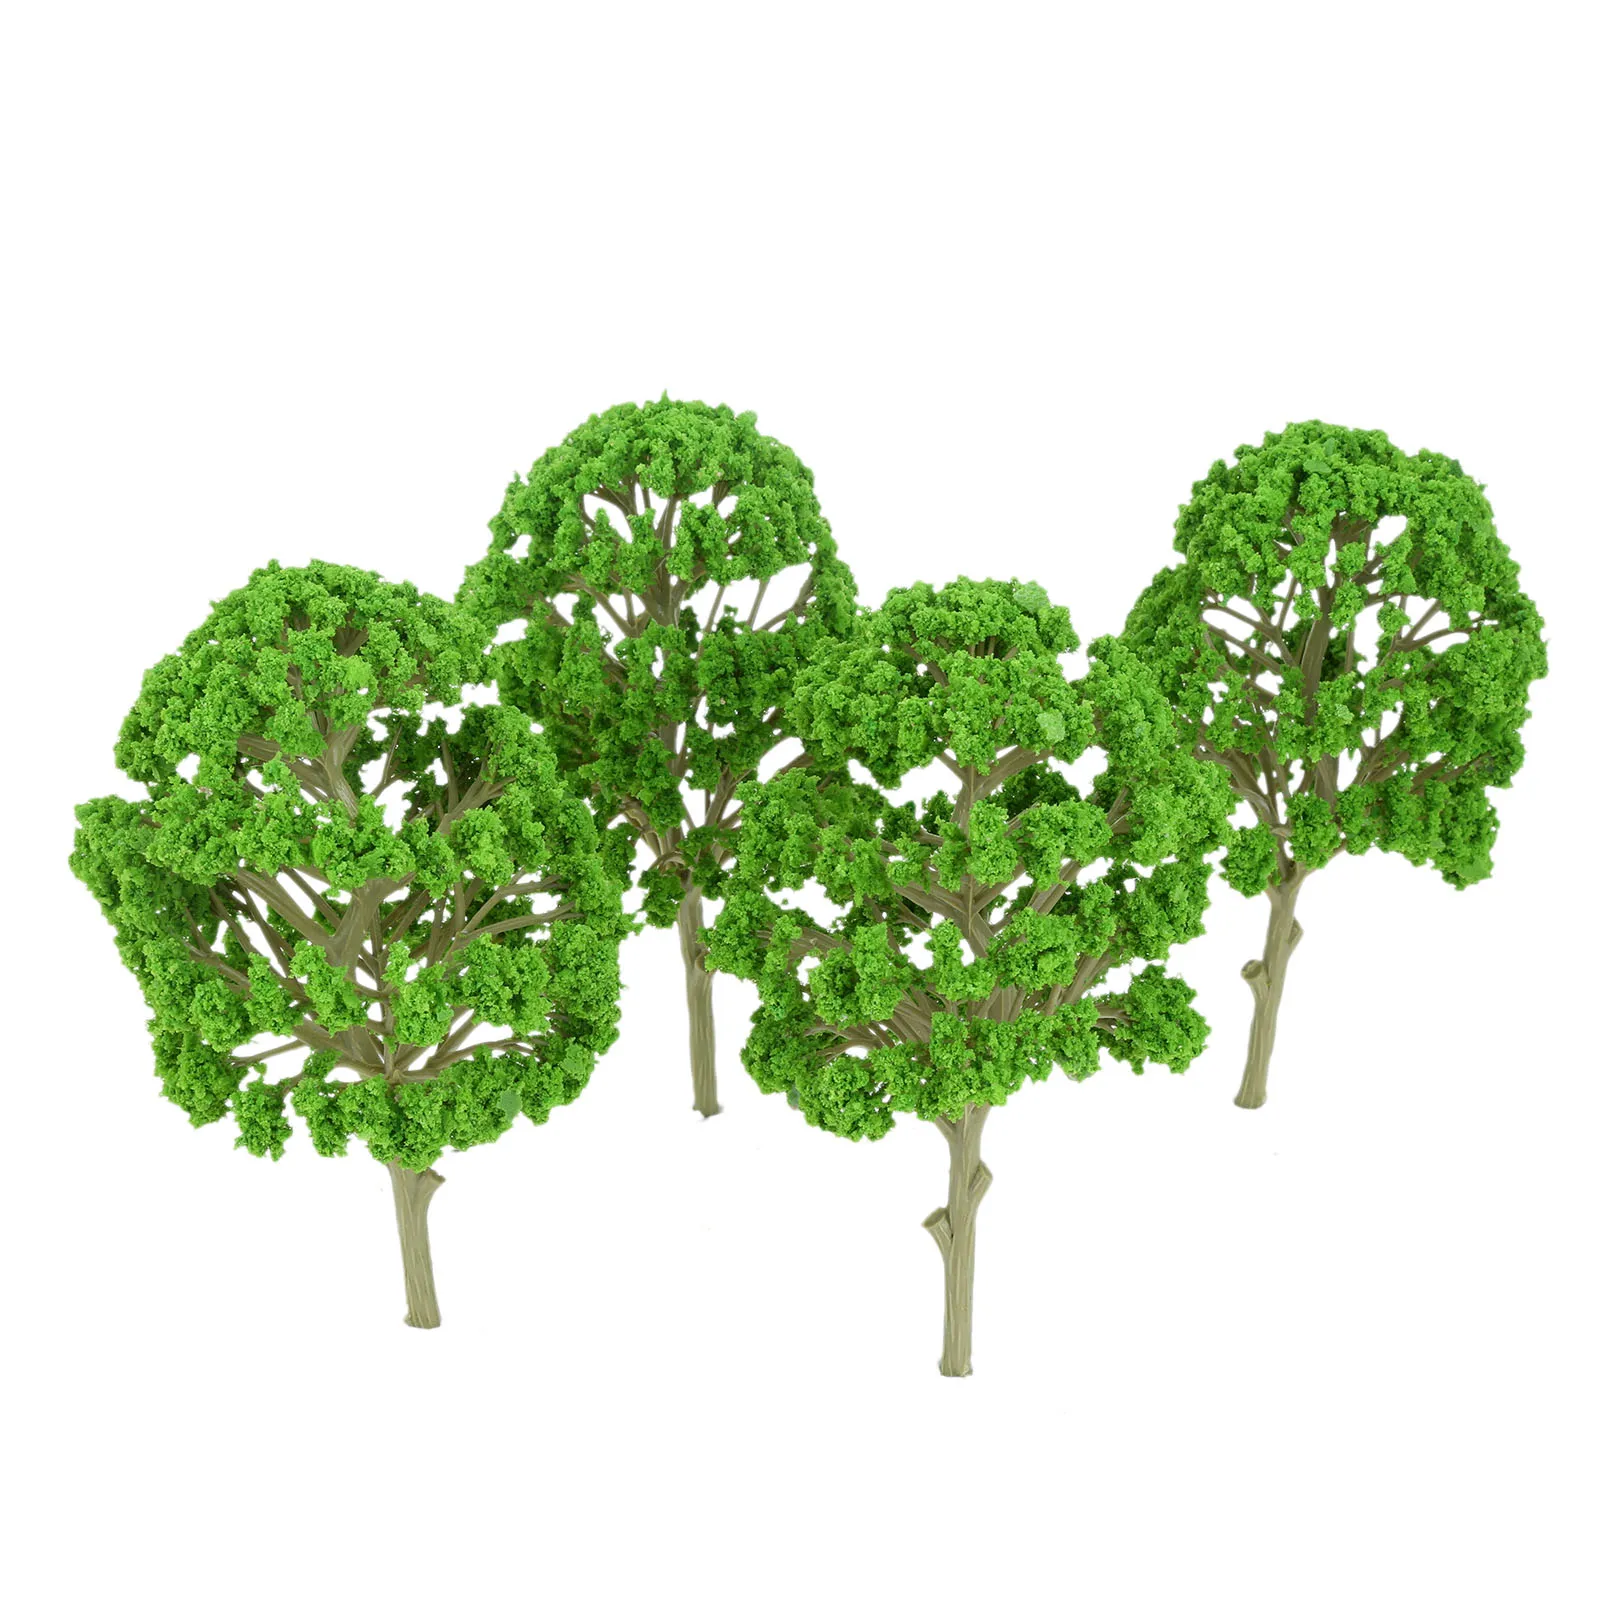 5 Szt. zielone drzewa Model Sztuczne rośliny Kolej Варгейм Park Diorama Dekoracje 150 mm (5,9 cala). Architektura Dworzec Krajobraz